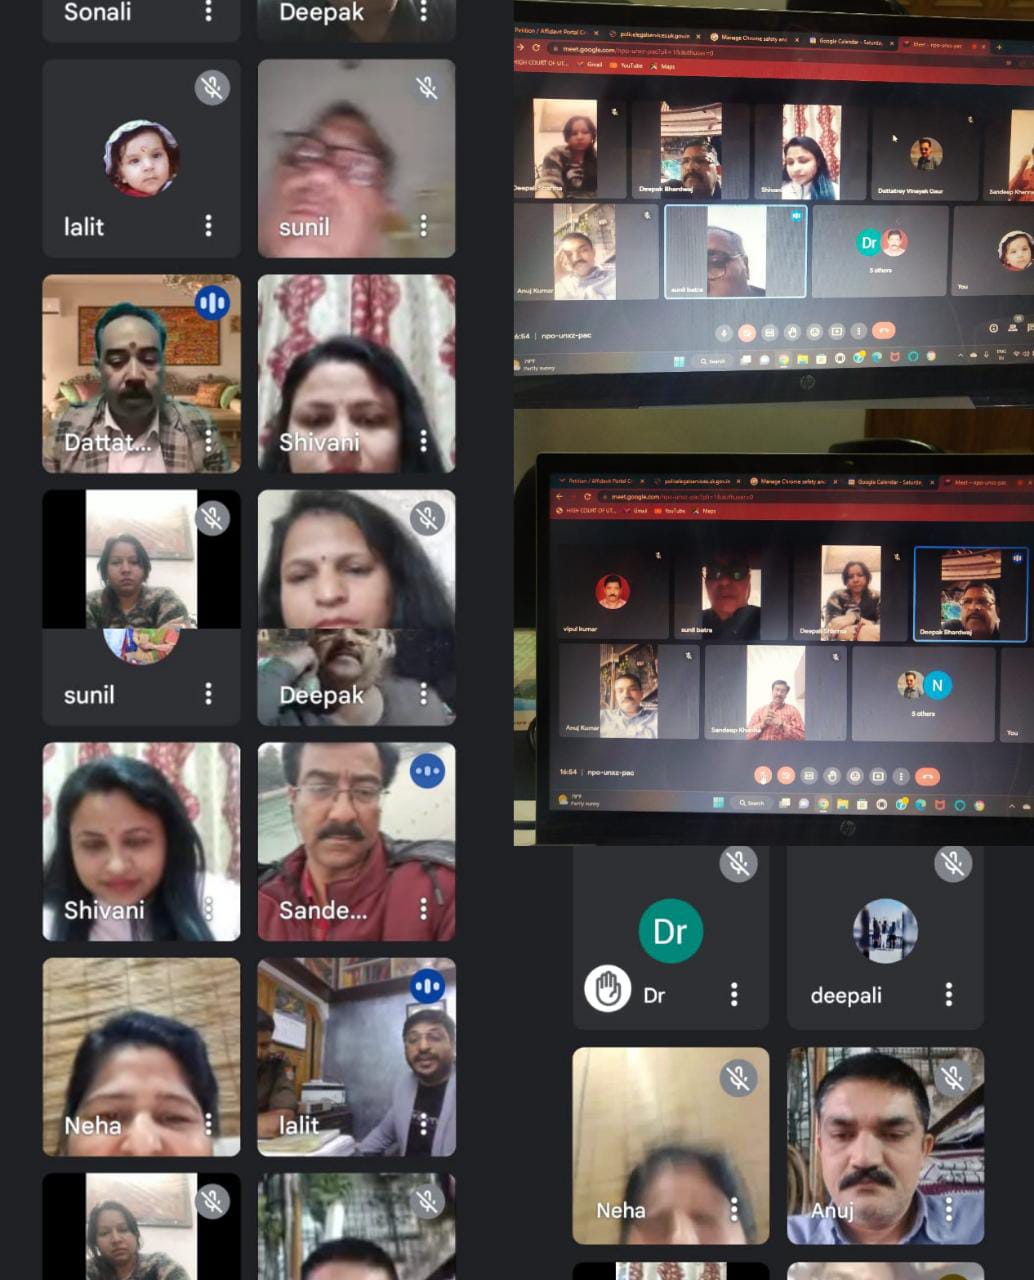 भारतीय जागरूकता समिति ने आयोजित किया ड्रग्स एवं साइबर क्राइम पर वेबिनार